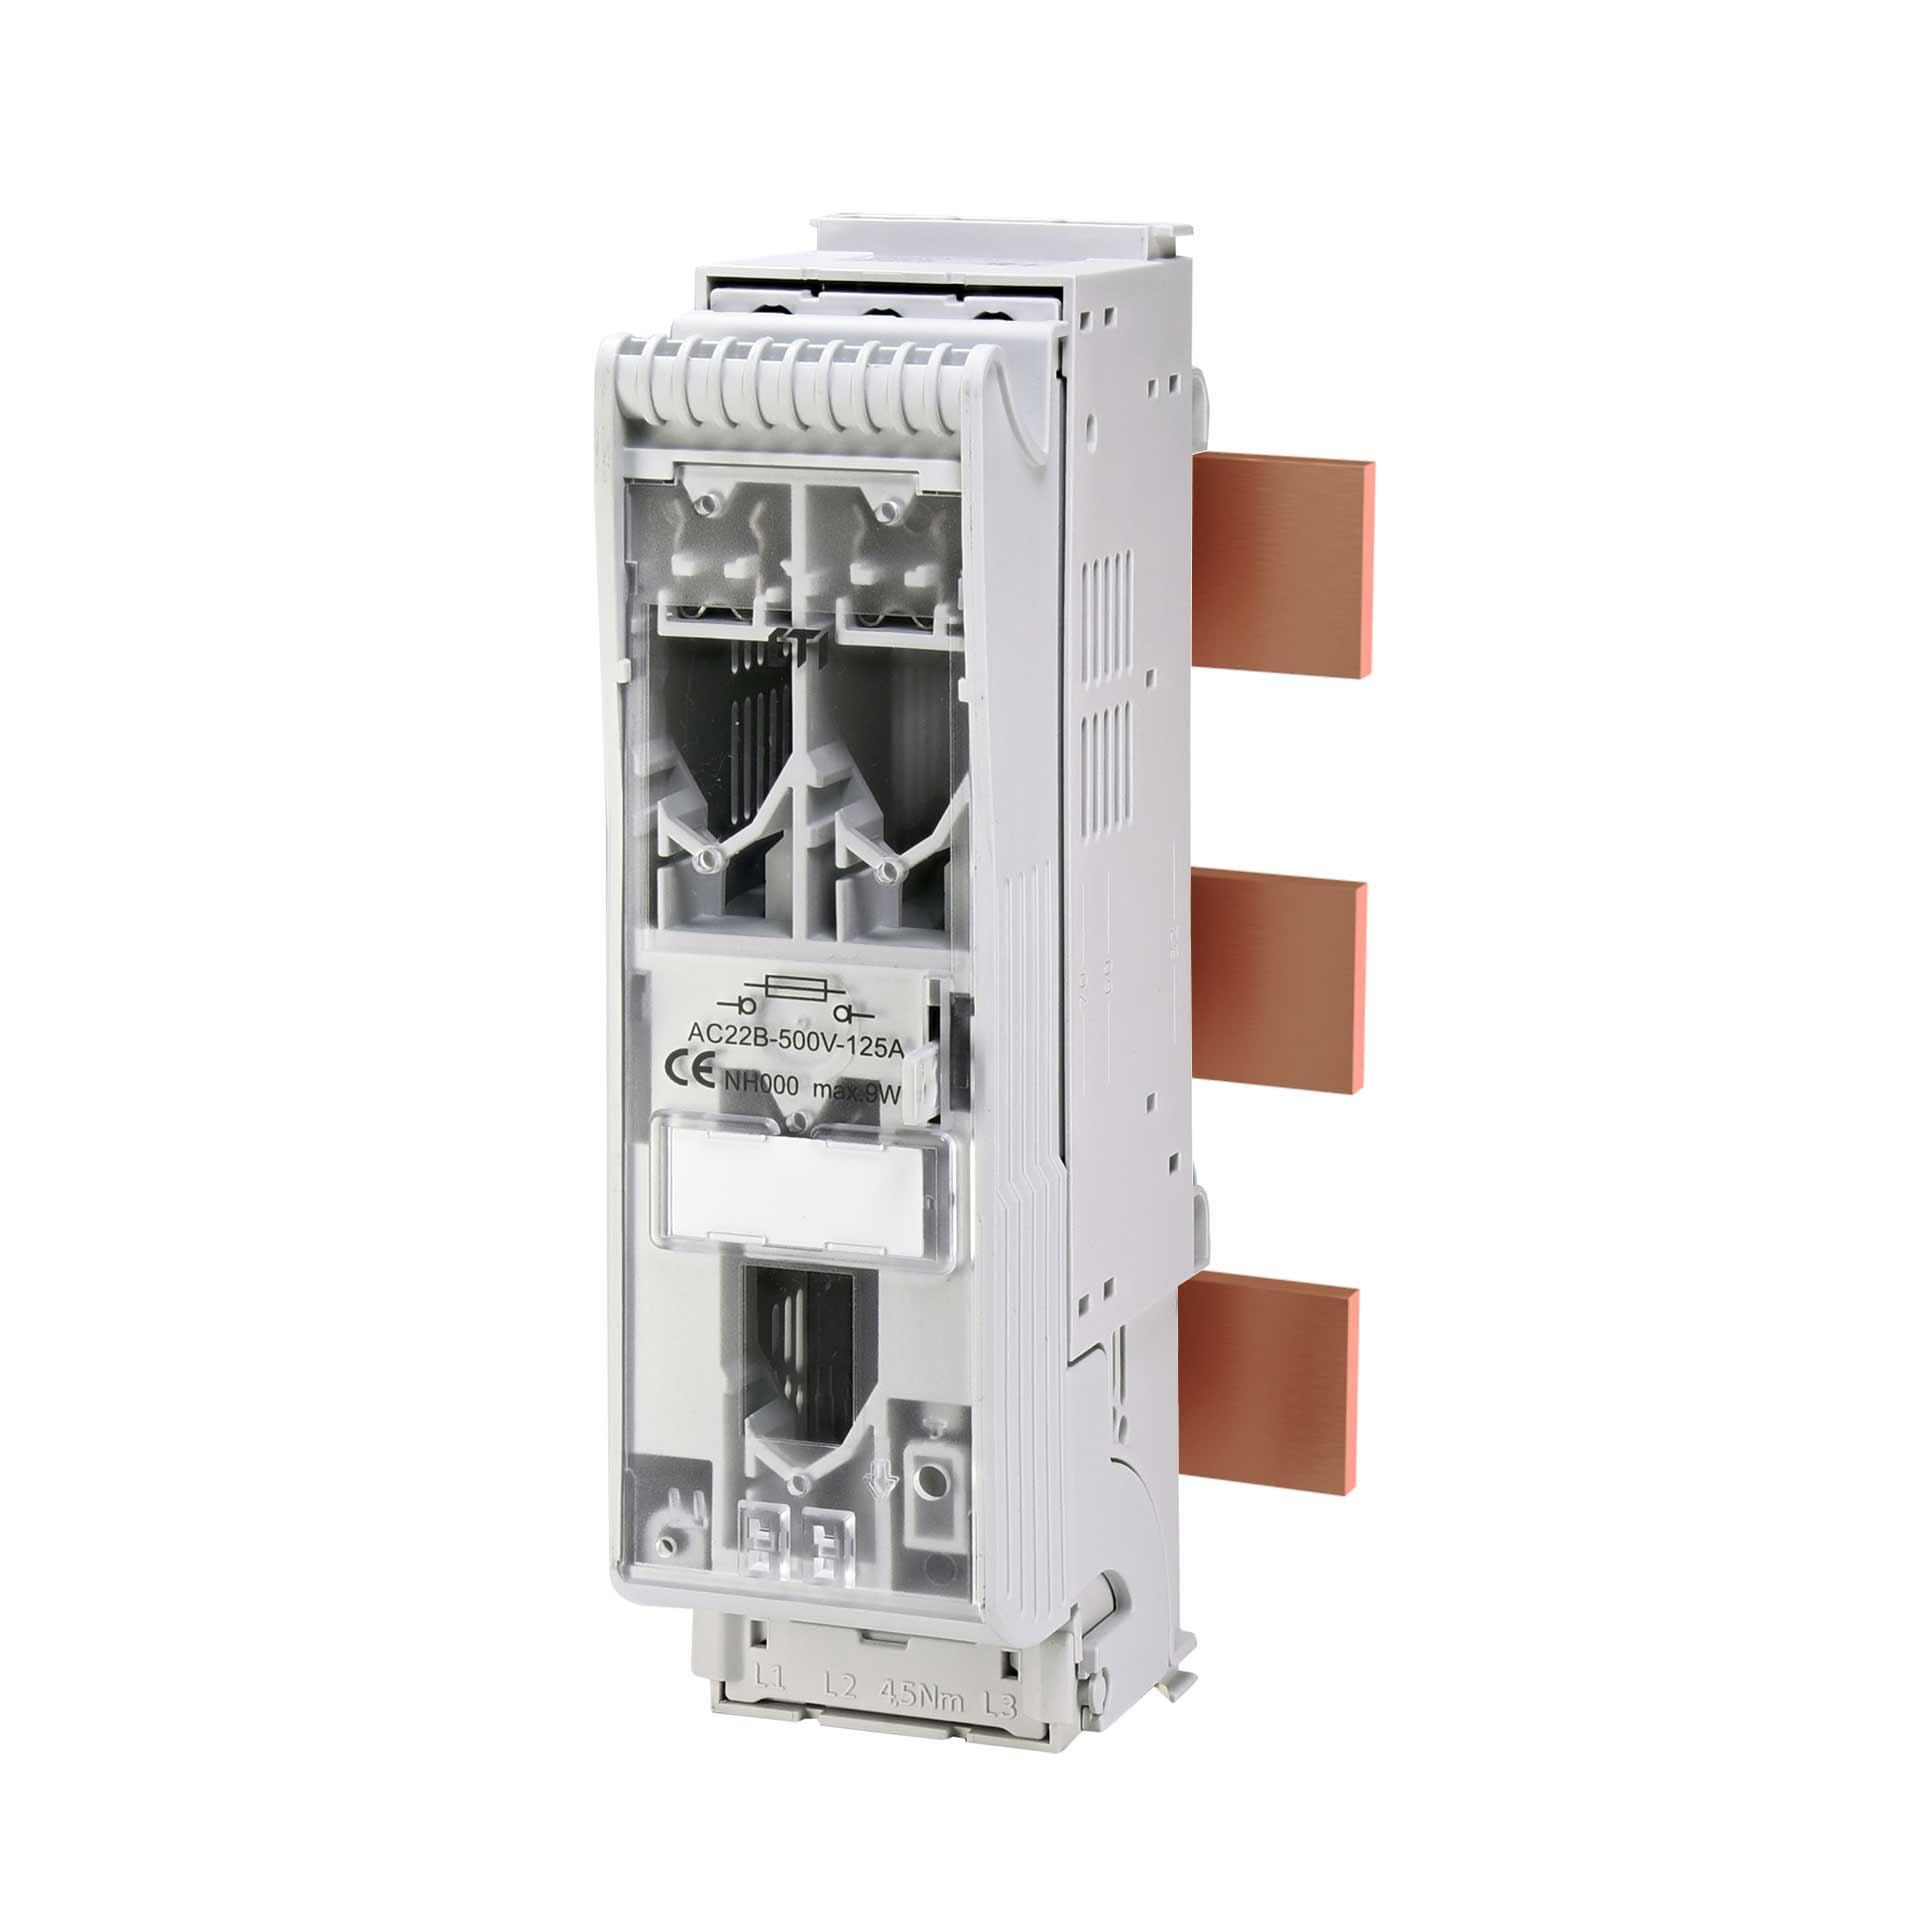 Interrupteur-sectionneur-fusible Gr.000, 3P, max. 125A, KVL-B-000 F50 AU (système de jeux de barres)